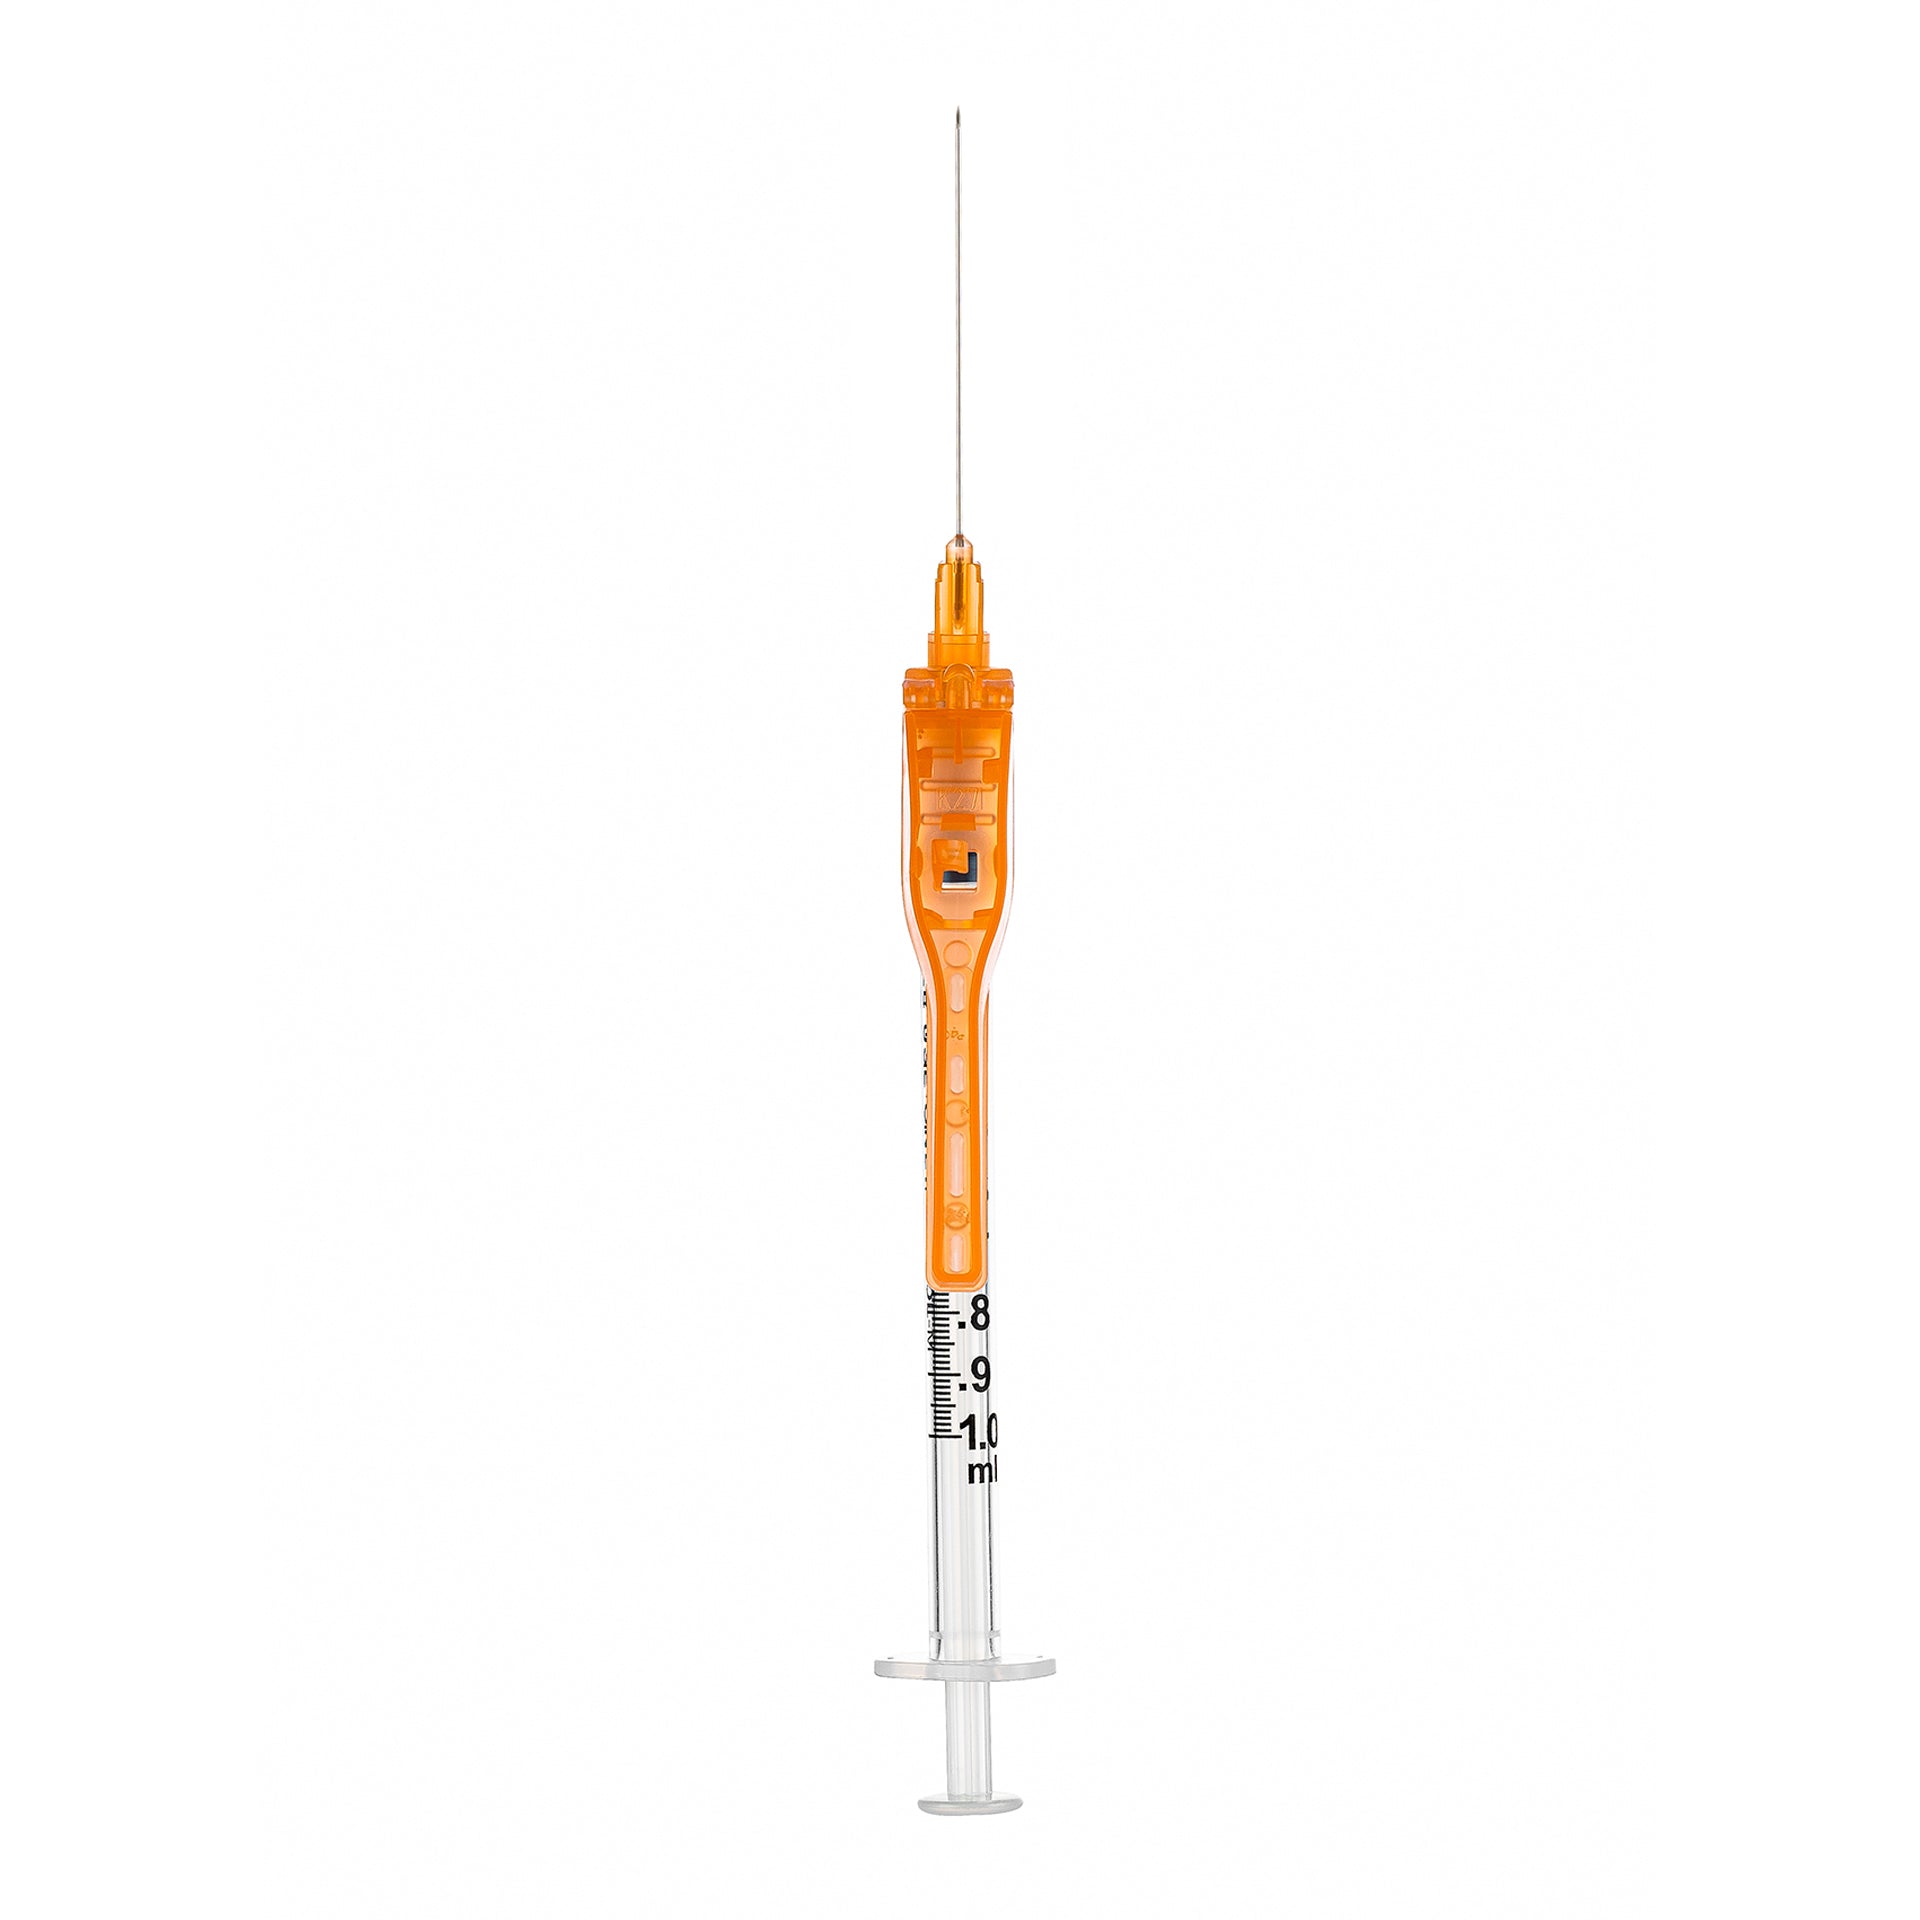 BX/50 - SOL-CARE 5ml Luer Lock Syringe w/Safety Needle 22G*1 1/2 (needle aside)